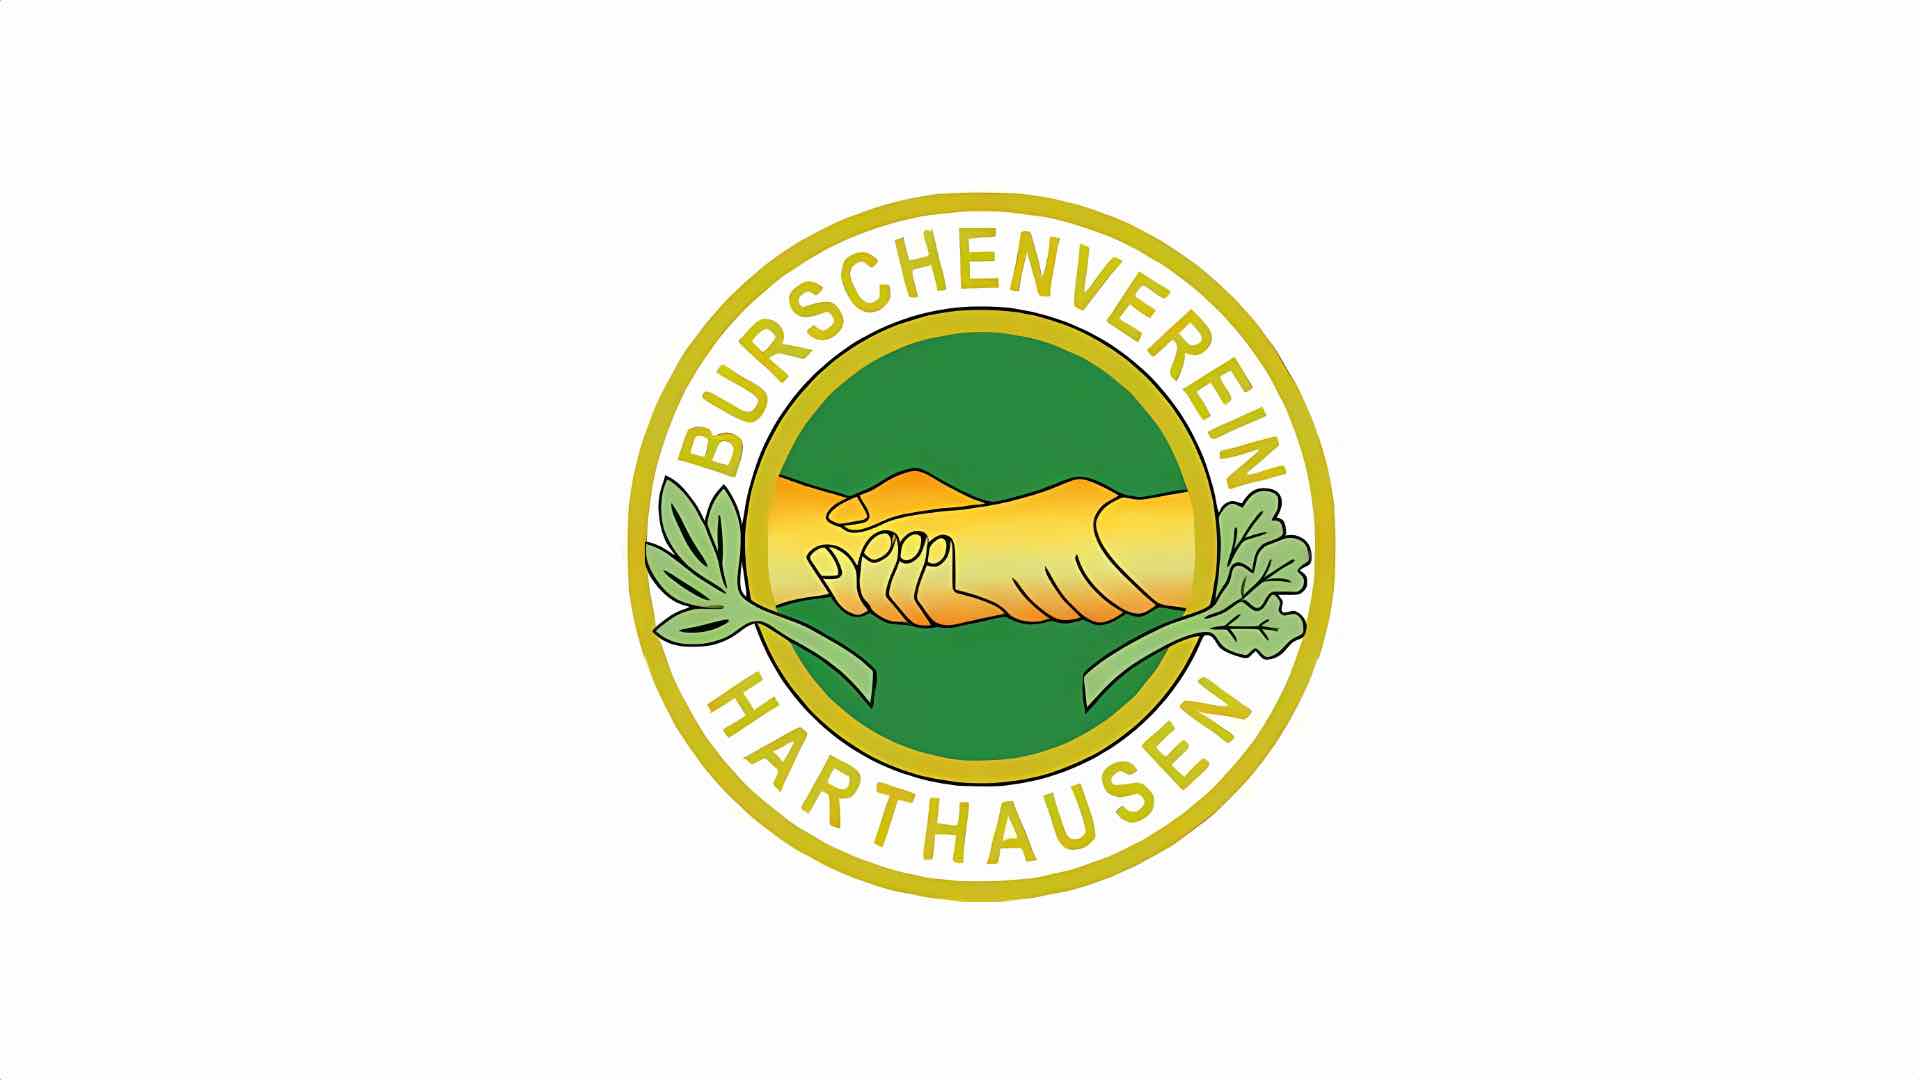 Burschenverein Harthausen e.V.